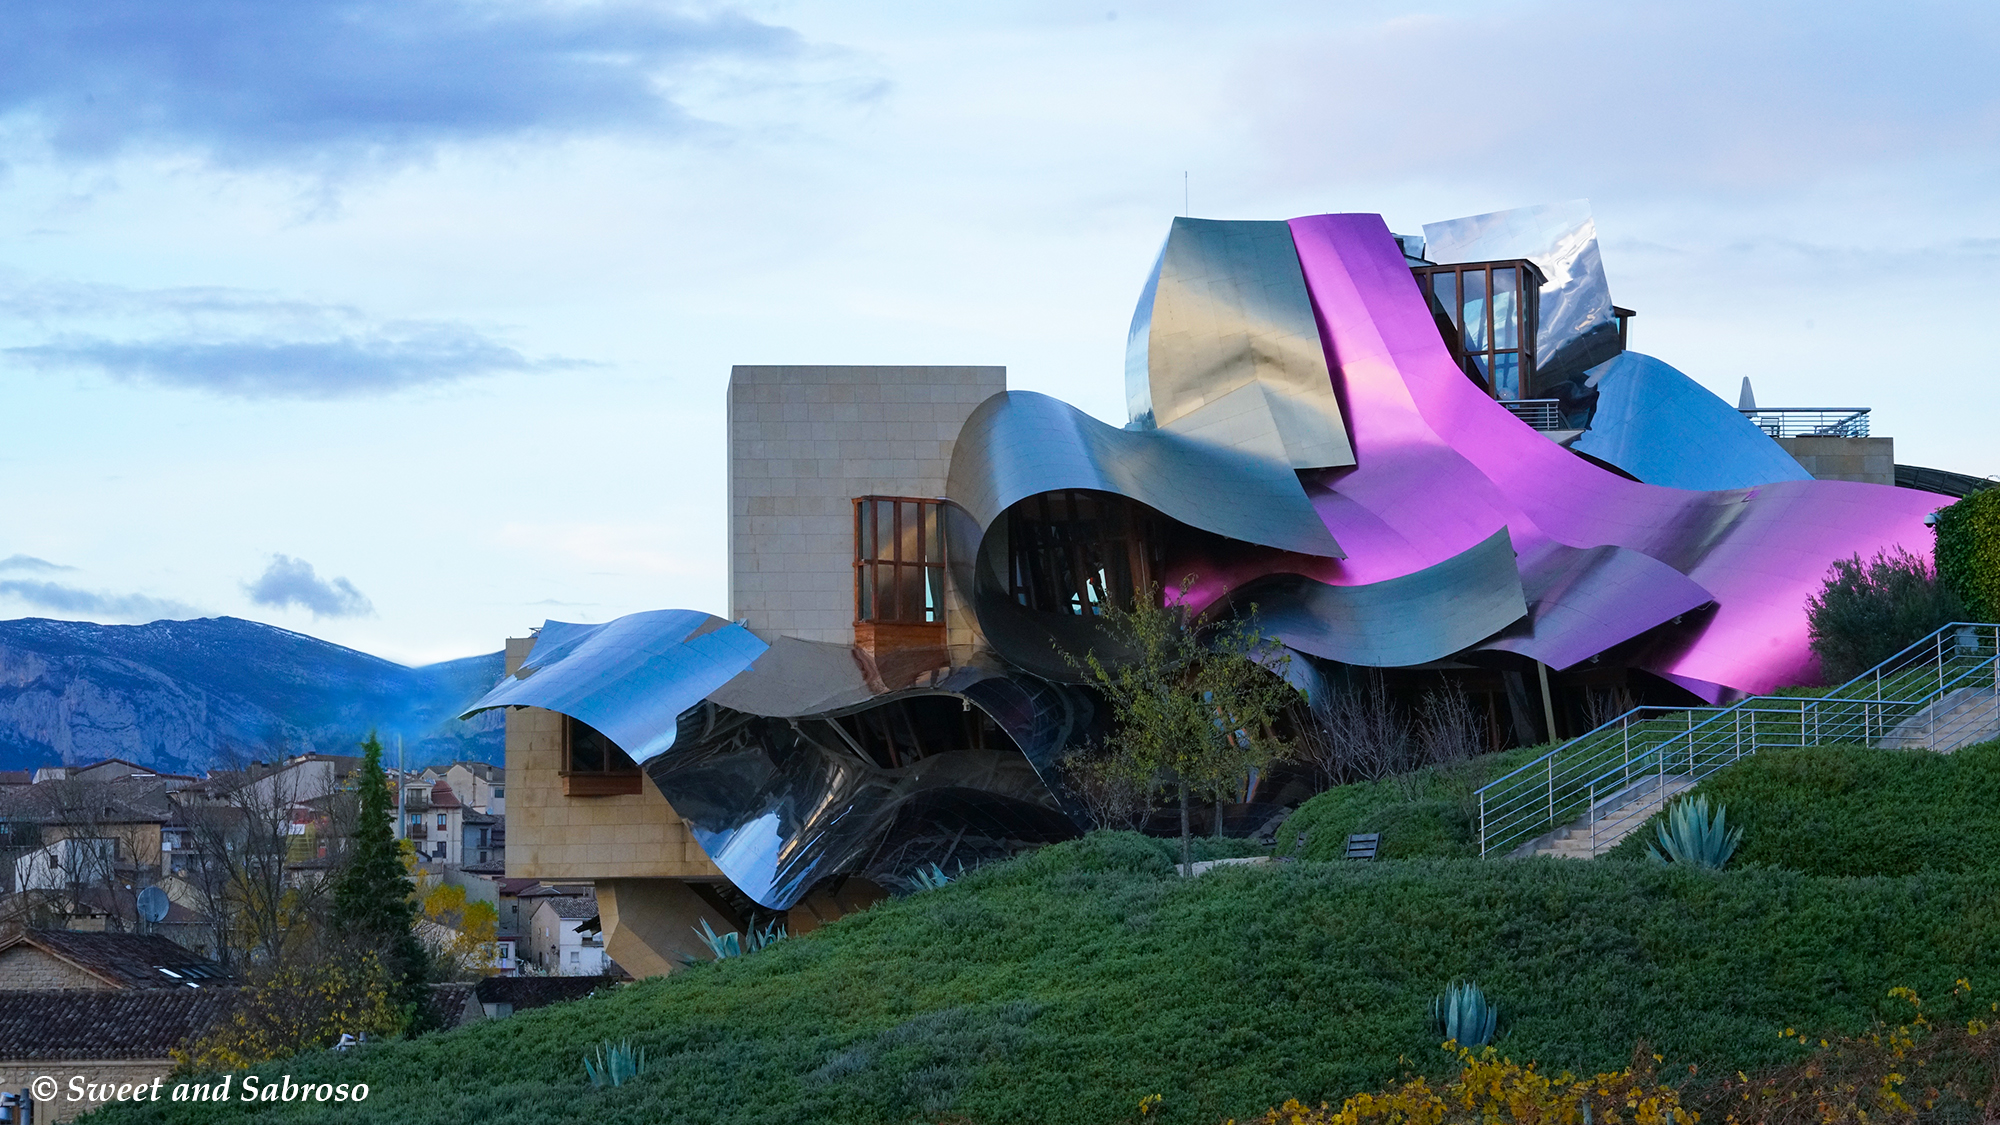 Marqués de Riscal Hotel designed by Frank Gehry, Elciego in La Rioja Alavesa Region, November 2016